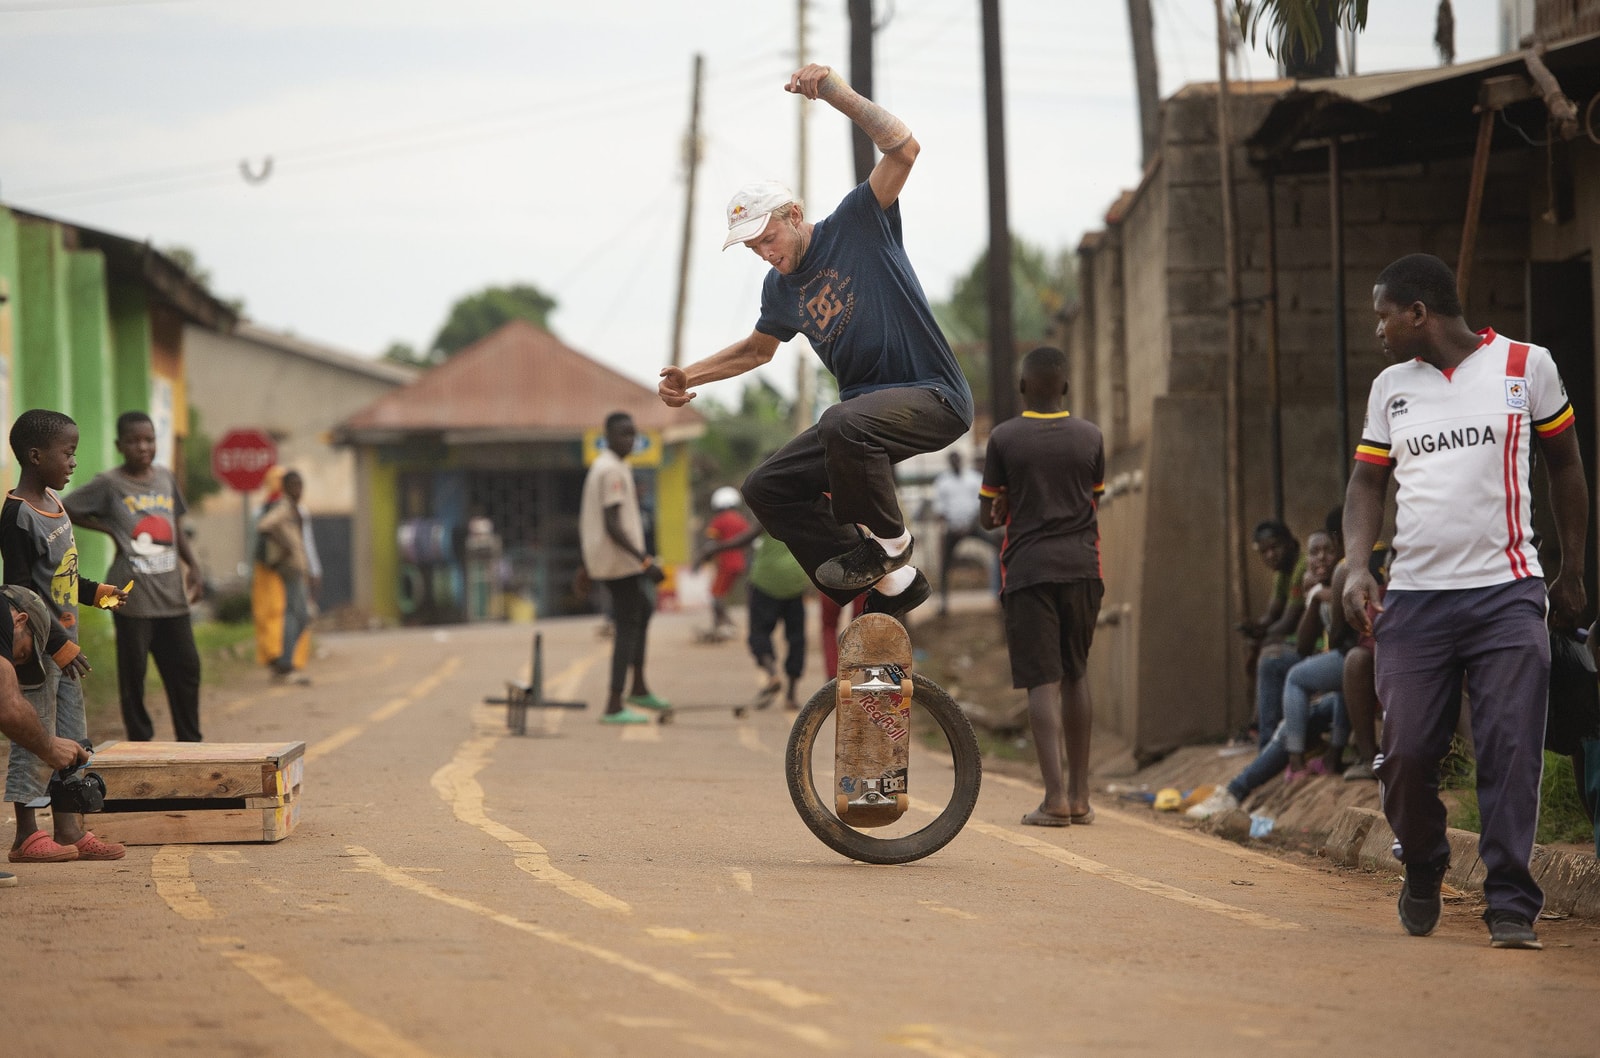 Red Bull's 'Skate Tales' Visits The Uganda Skateboard Society